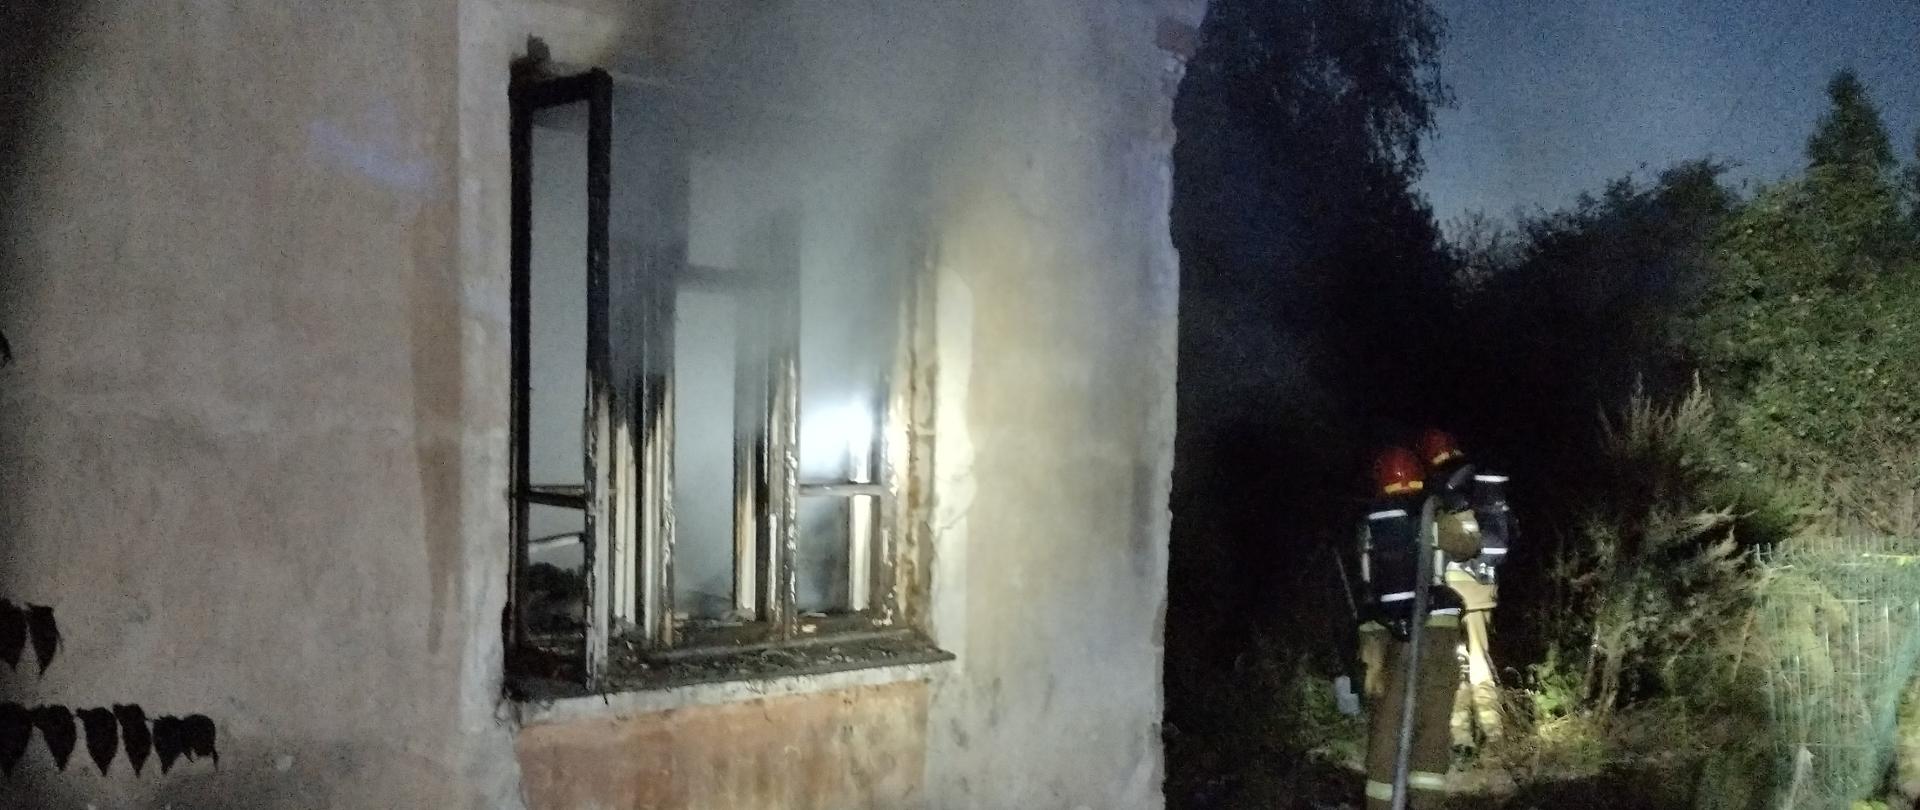 Przed budynkiem z którego wydobywa się dym z otwartego okna stoi dwóch strażaków, którzy dogaszają pożar jaki wybuchł w kuchni.